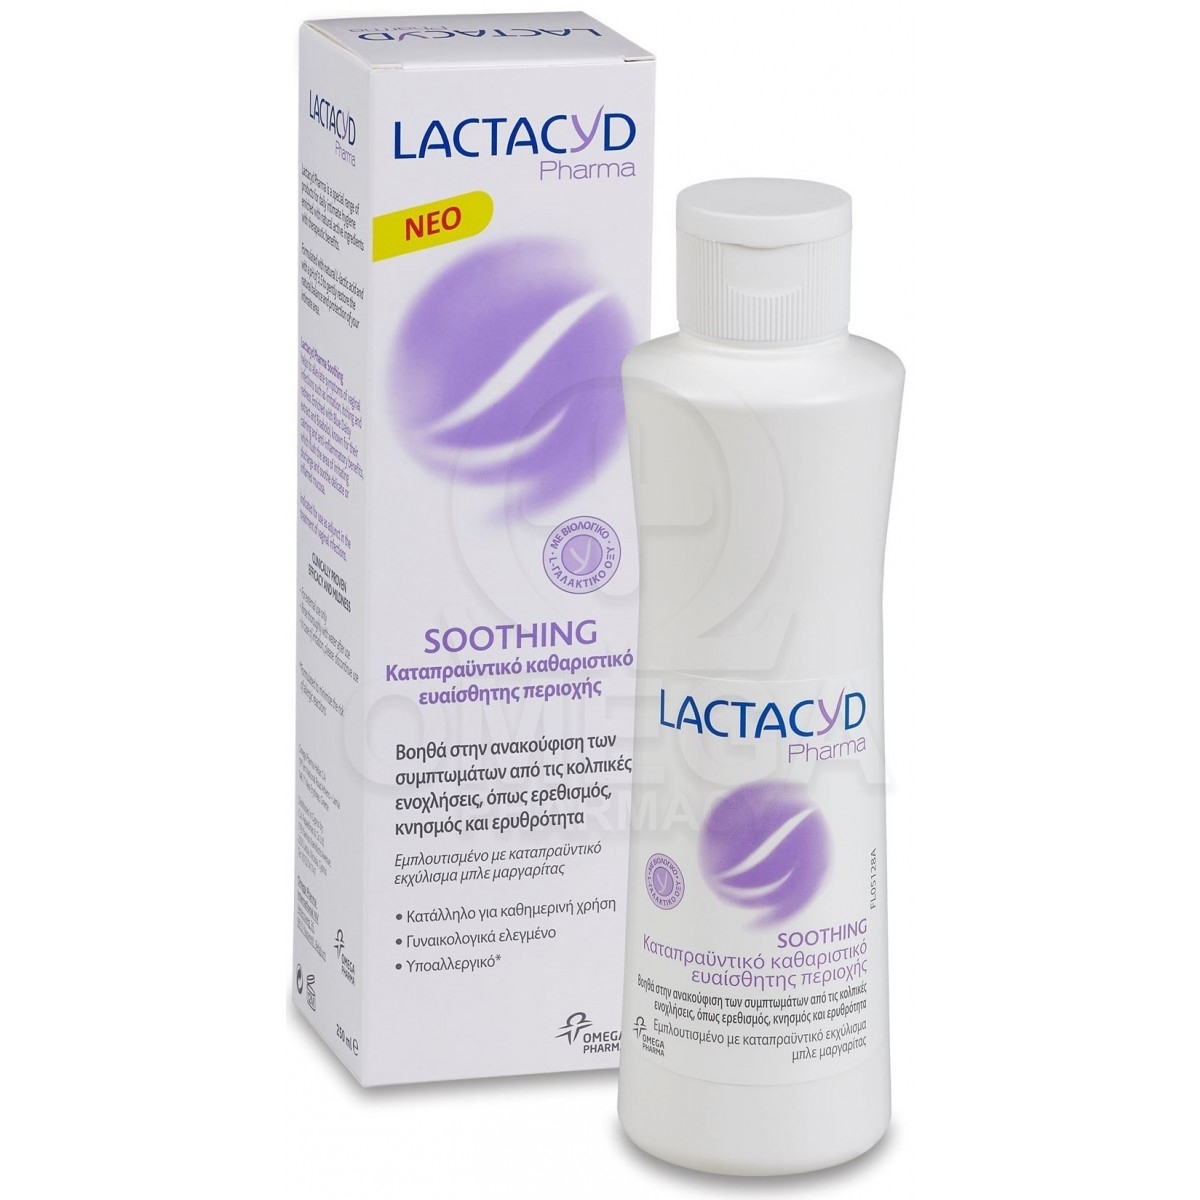 LACTACYD Pharma Soothing Intimate Wash Καταπραϋντικό Καθαριστικό Ευαίσθητης  Περιοχής, Ανακουφίζει από τα Συμπτωμάτα των Κολπικών